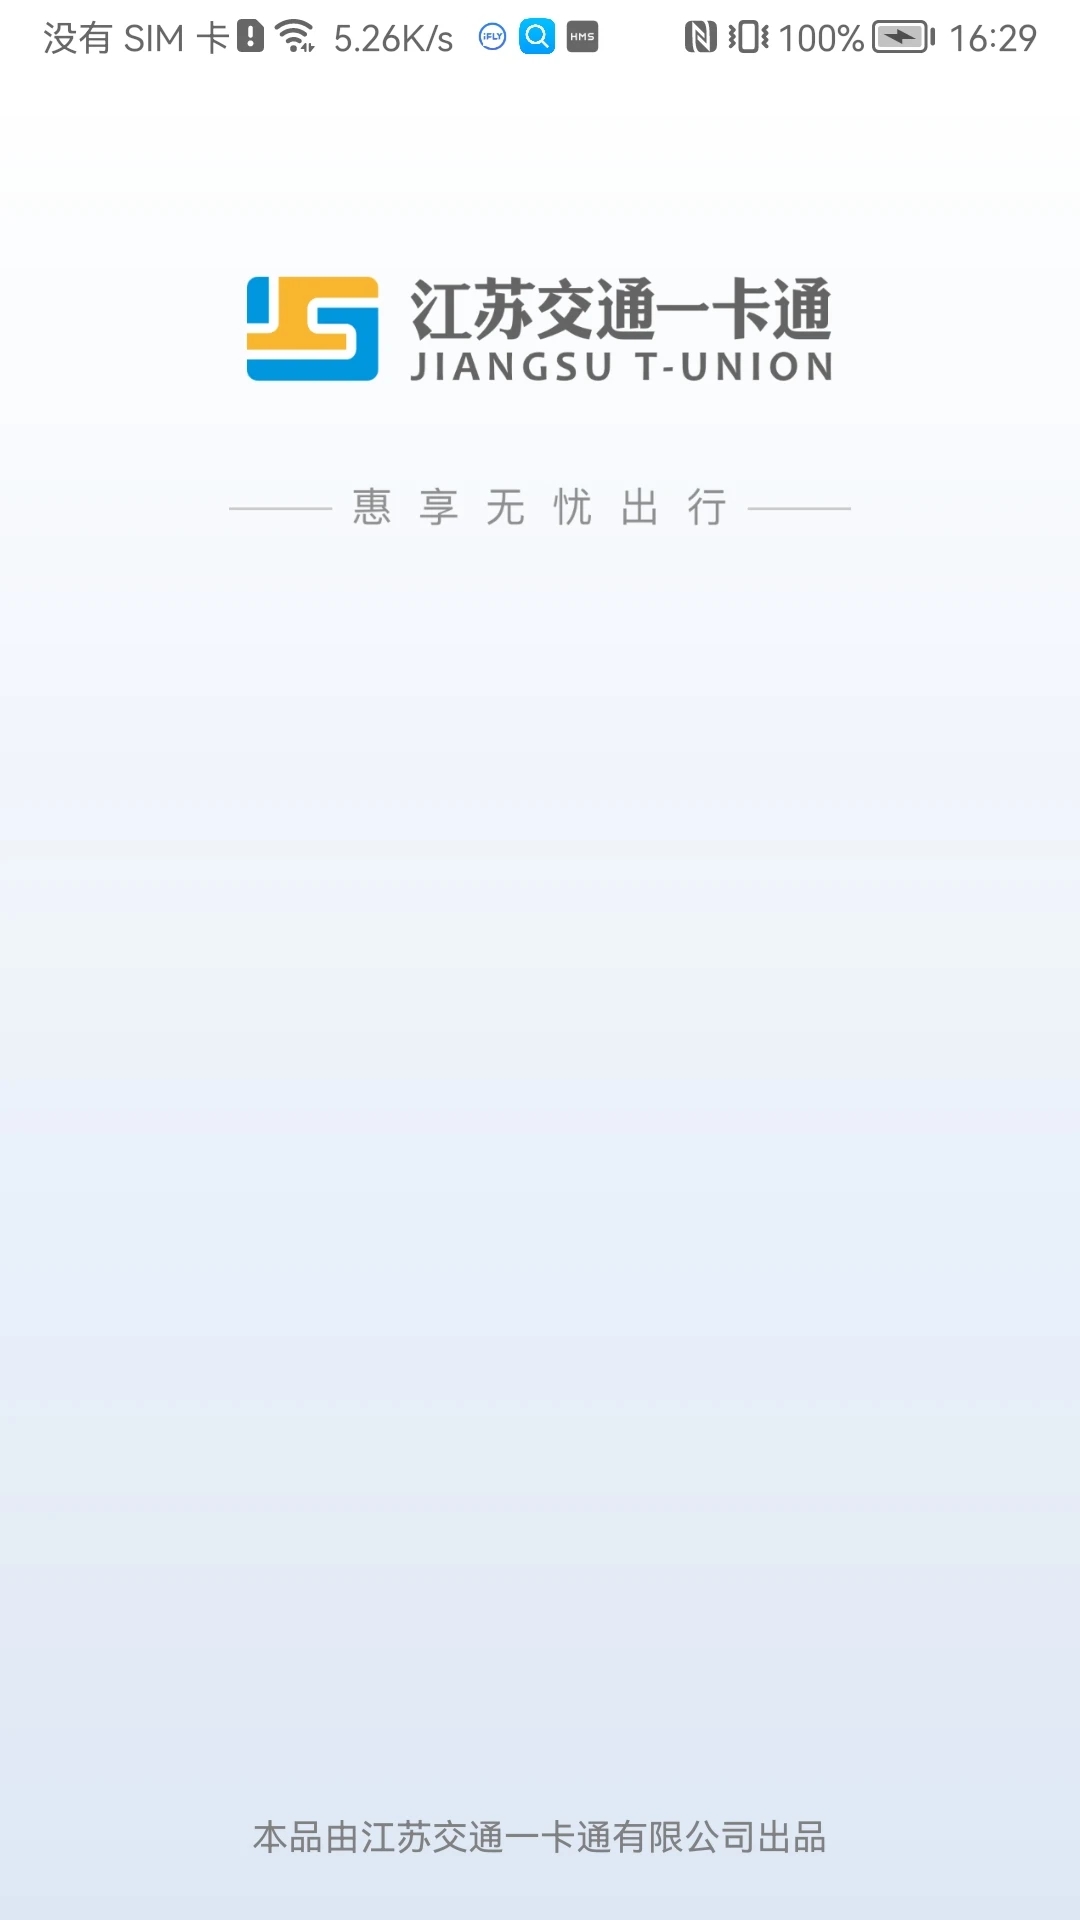 江苏一卡通安卓版app图片1